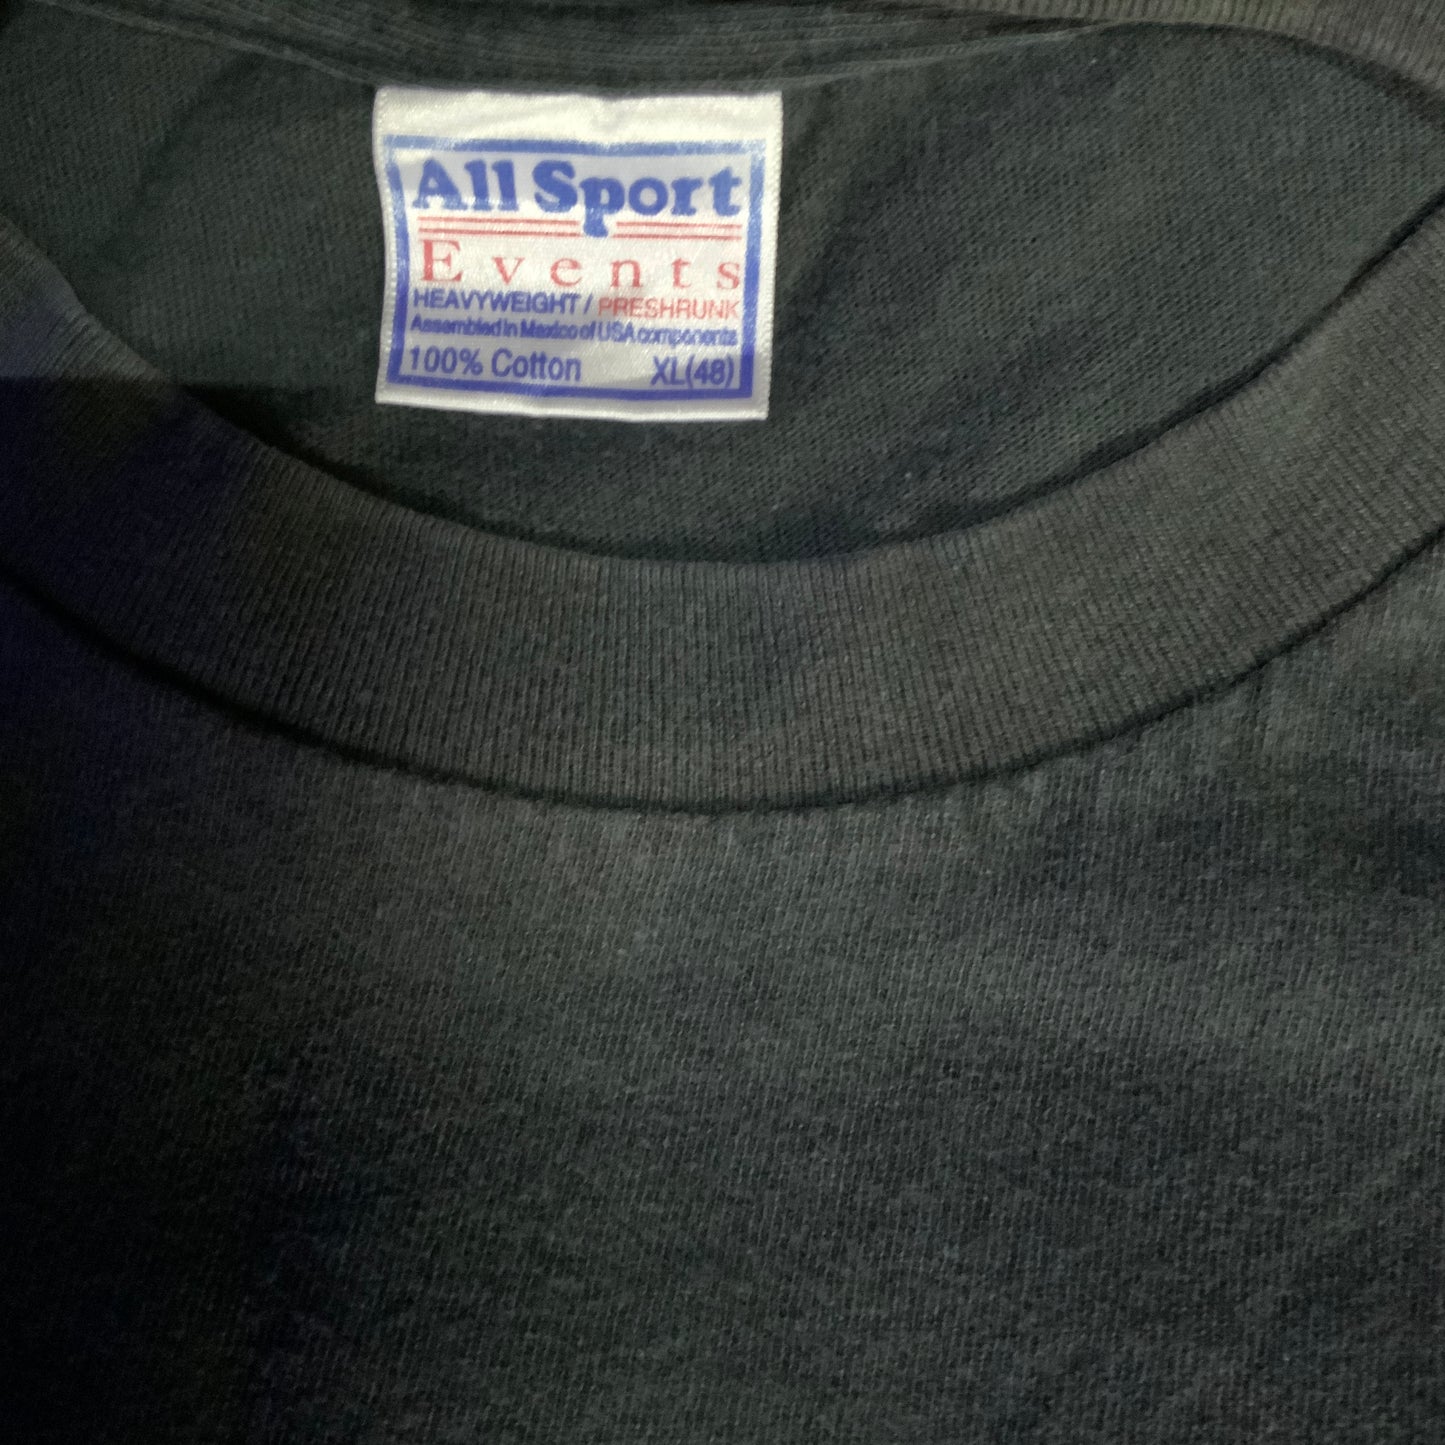 Papa Roach "Promo" Shirt - XL